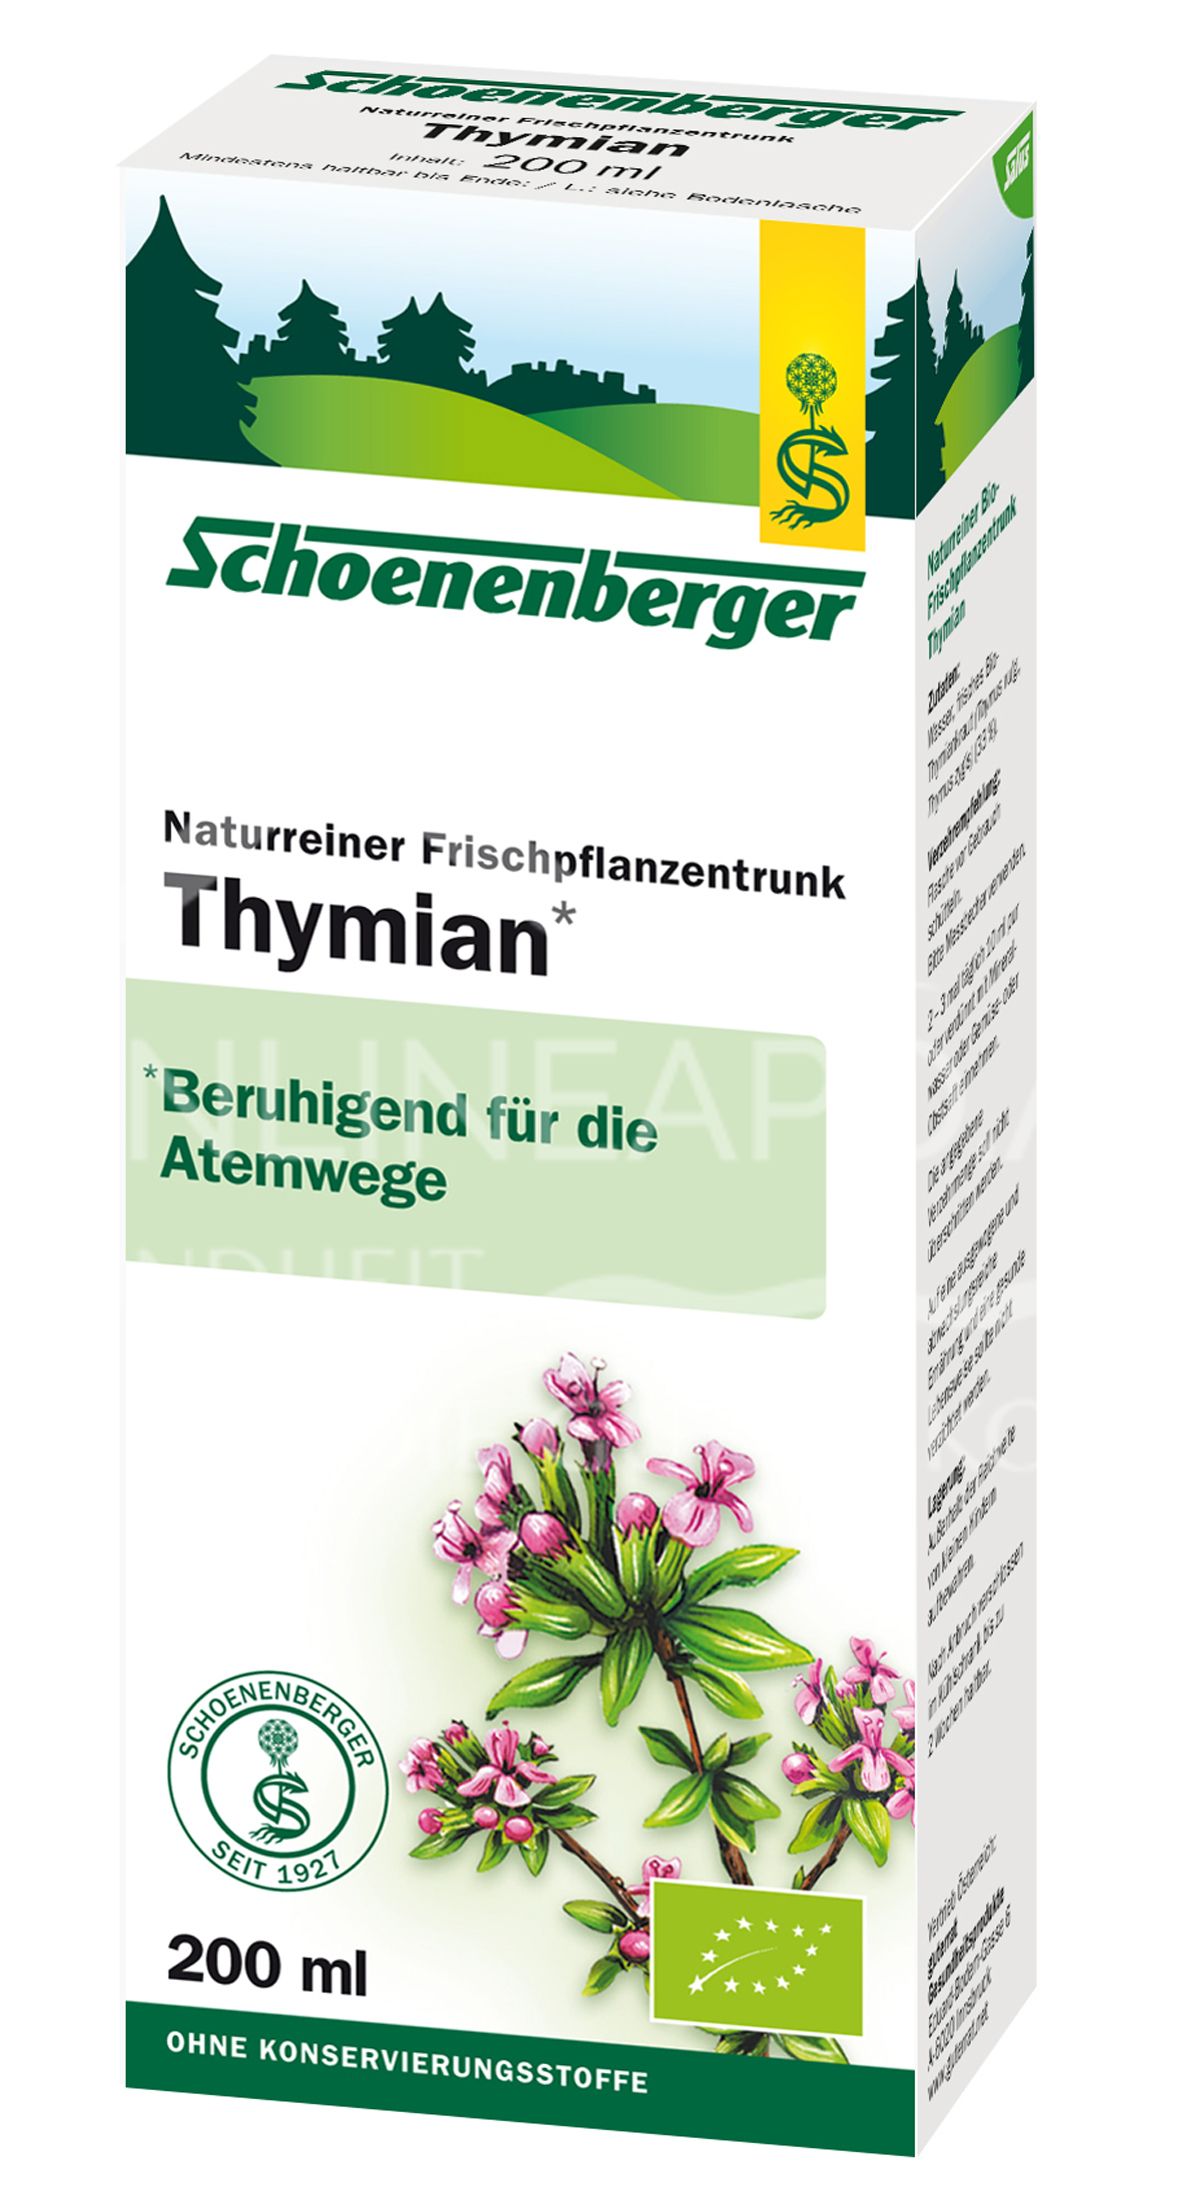 Schoenenberger Thymian Naturreiner Frischpflanzentrunk (BIO)